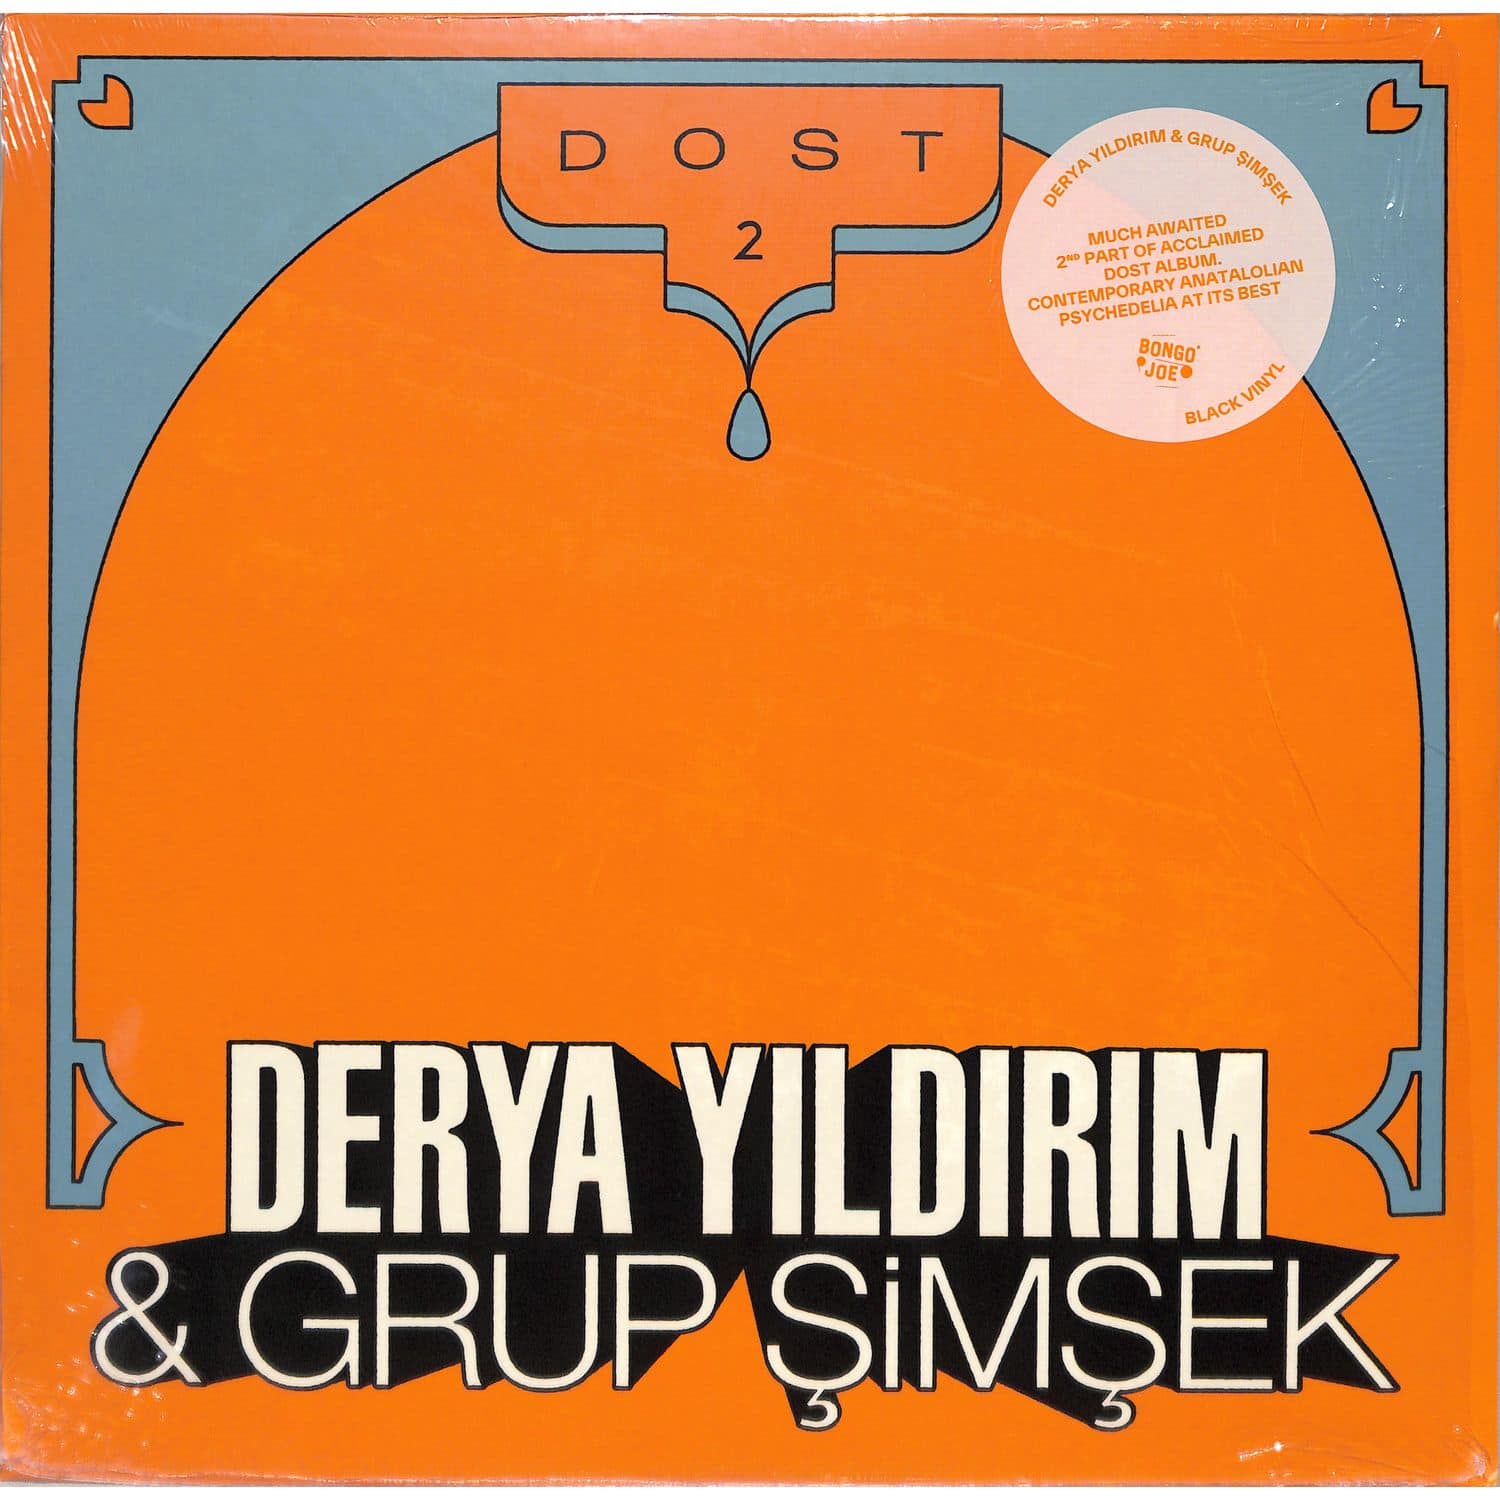 Derya Yildirim & Grup Simsek - DOST 2 